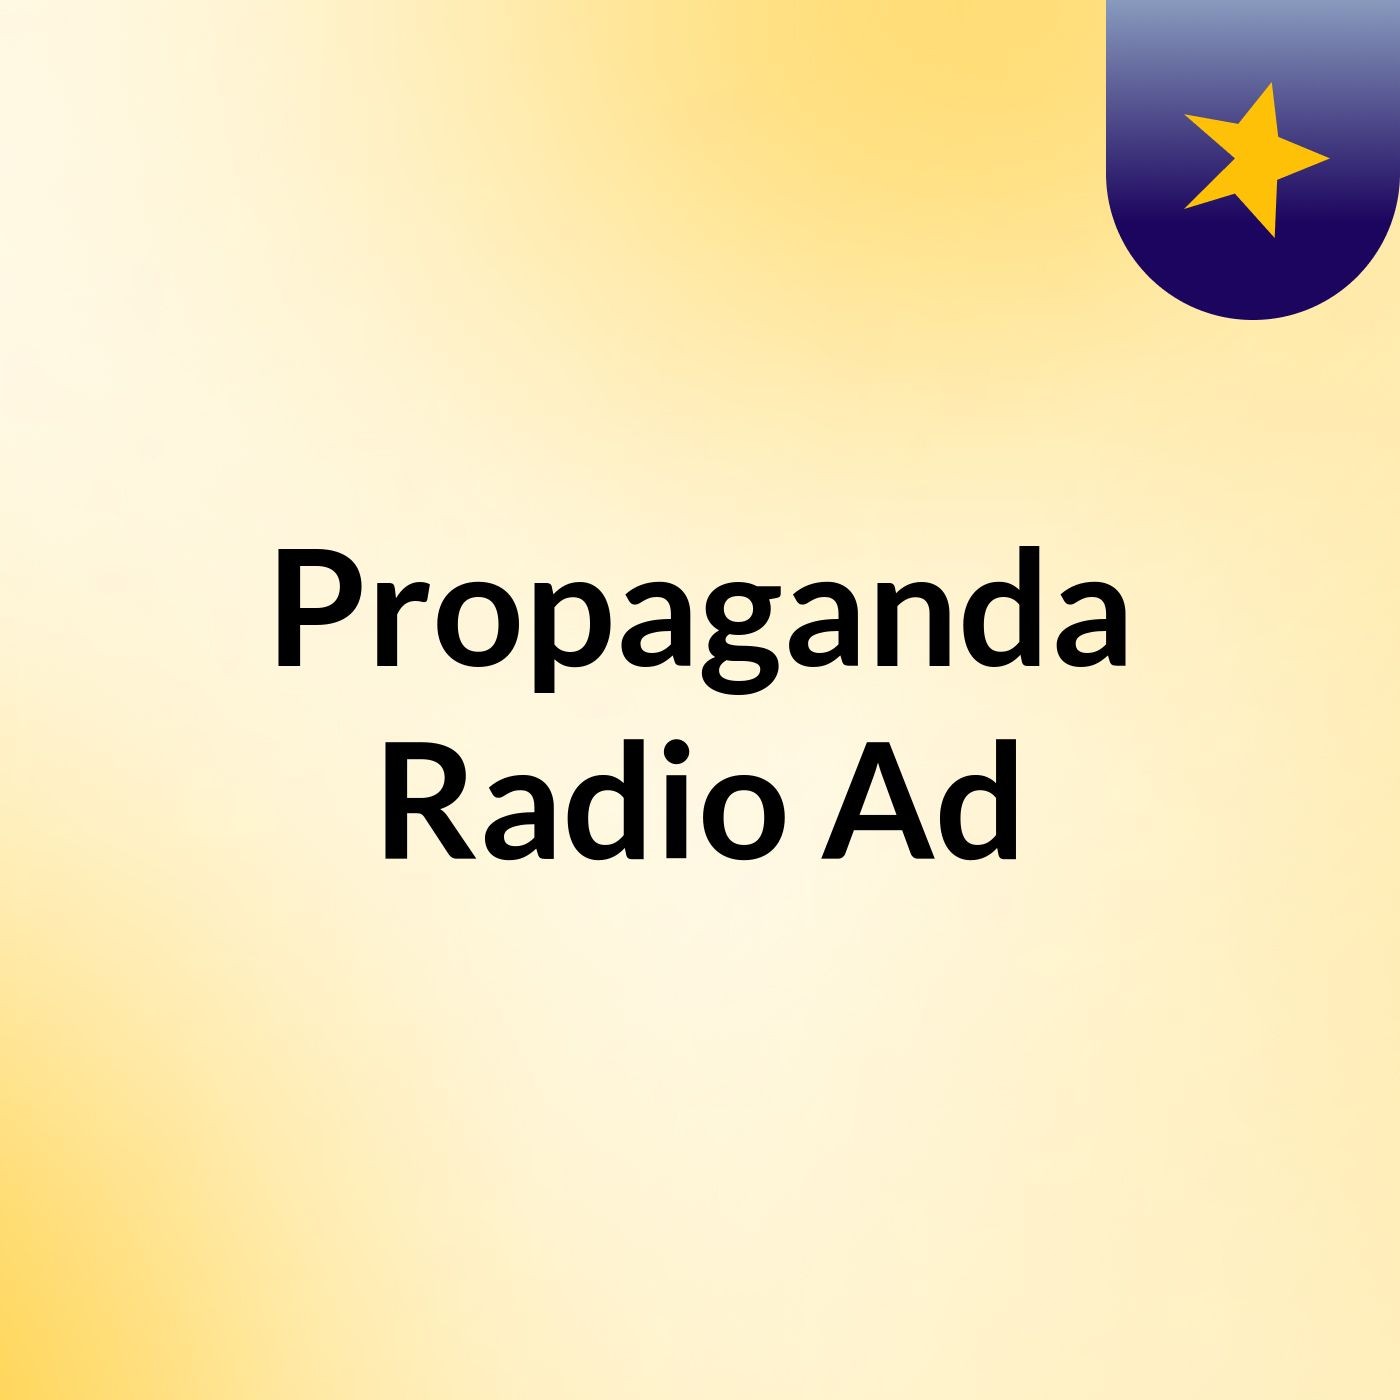 Propaganda Radio Ad